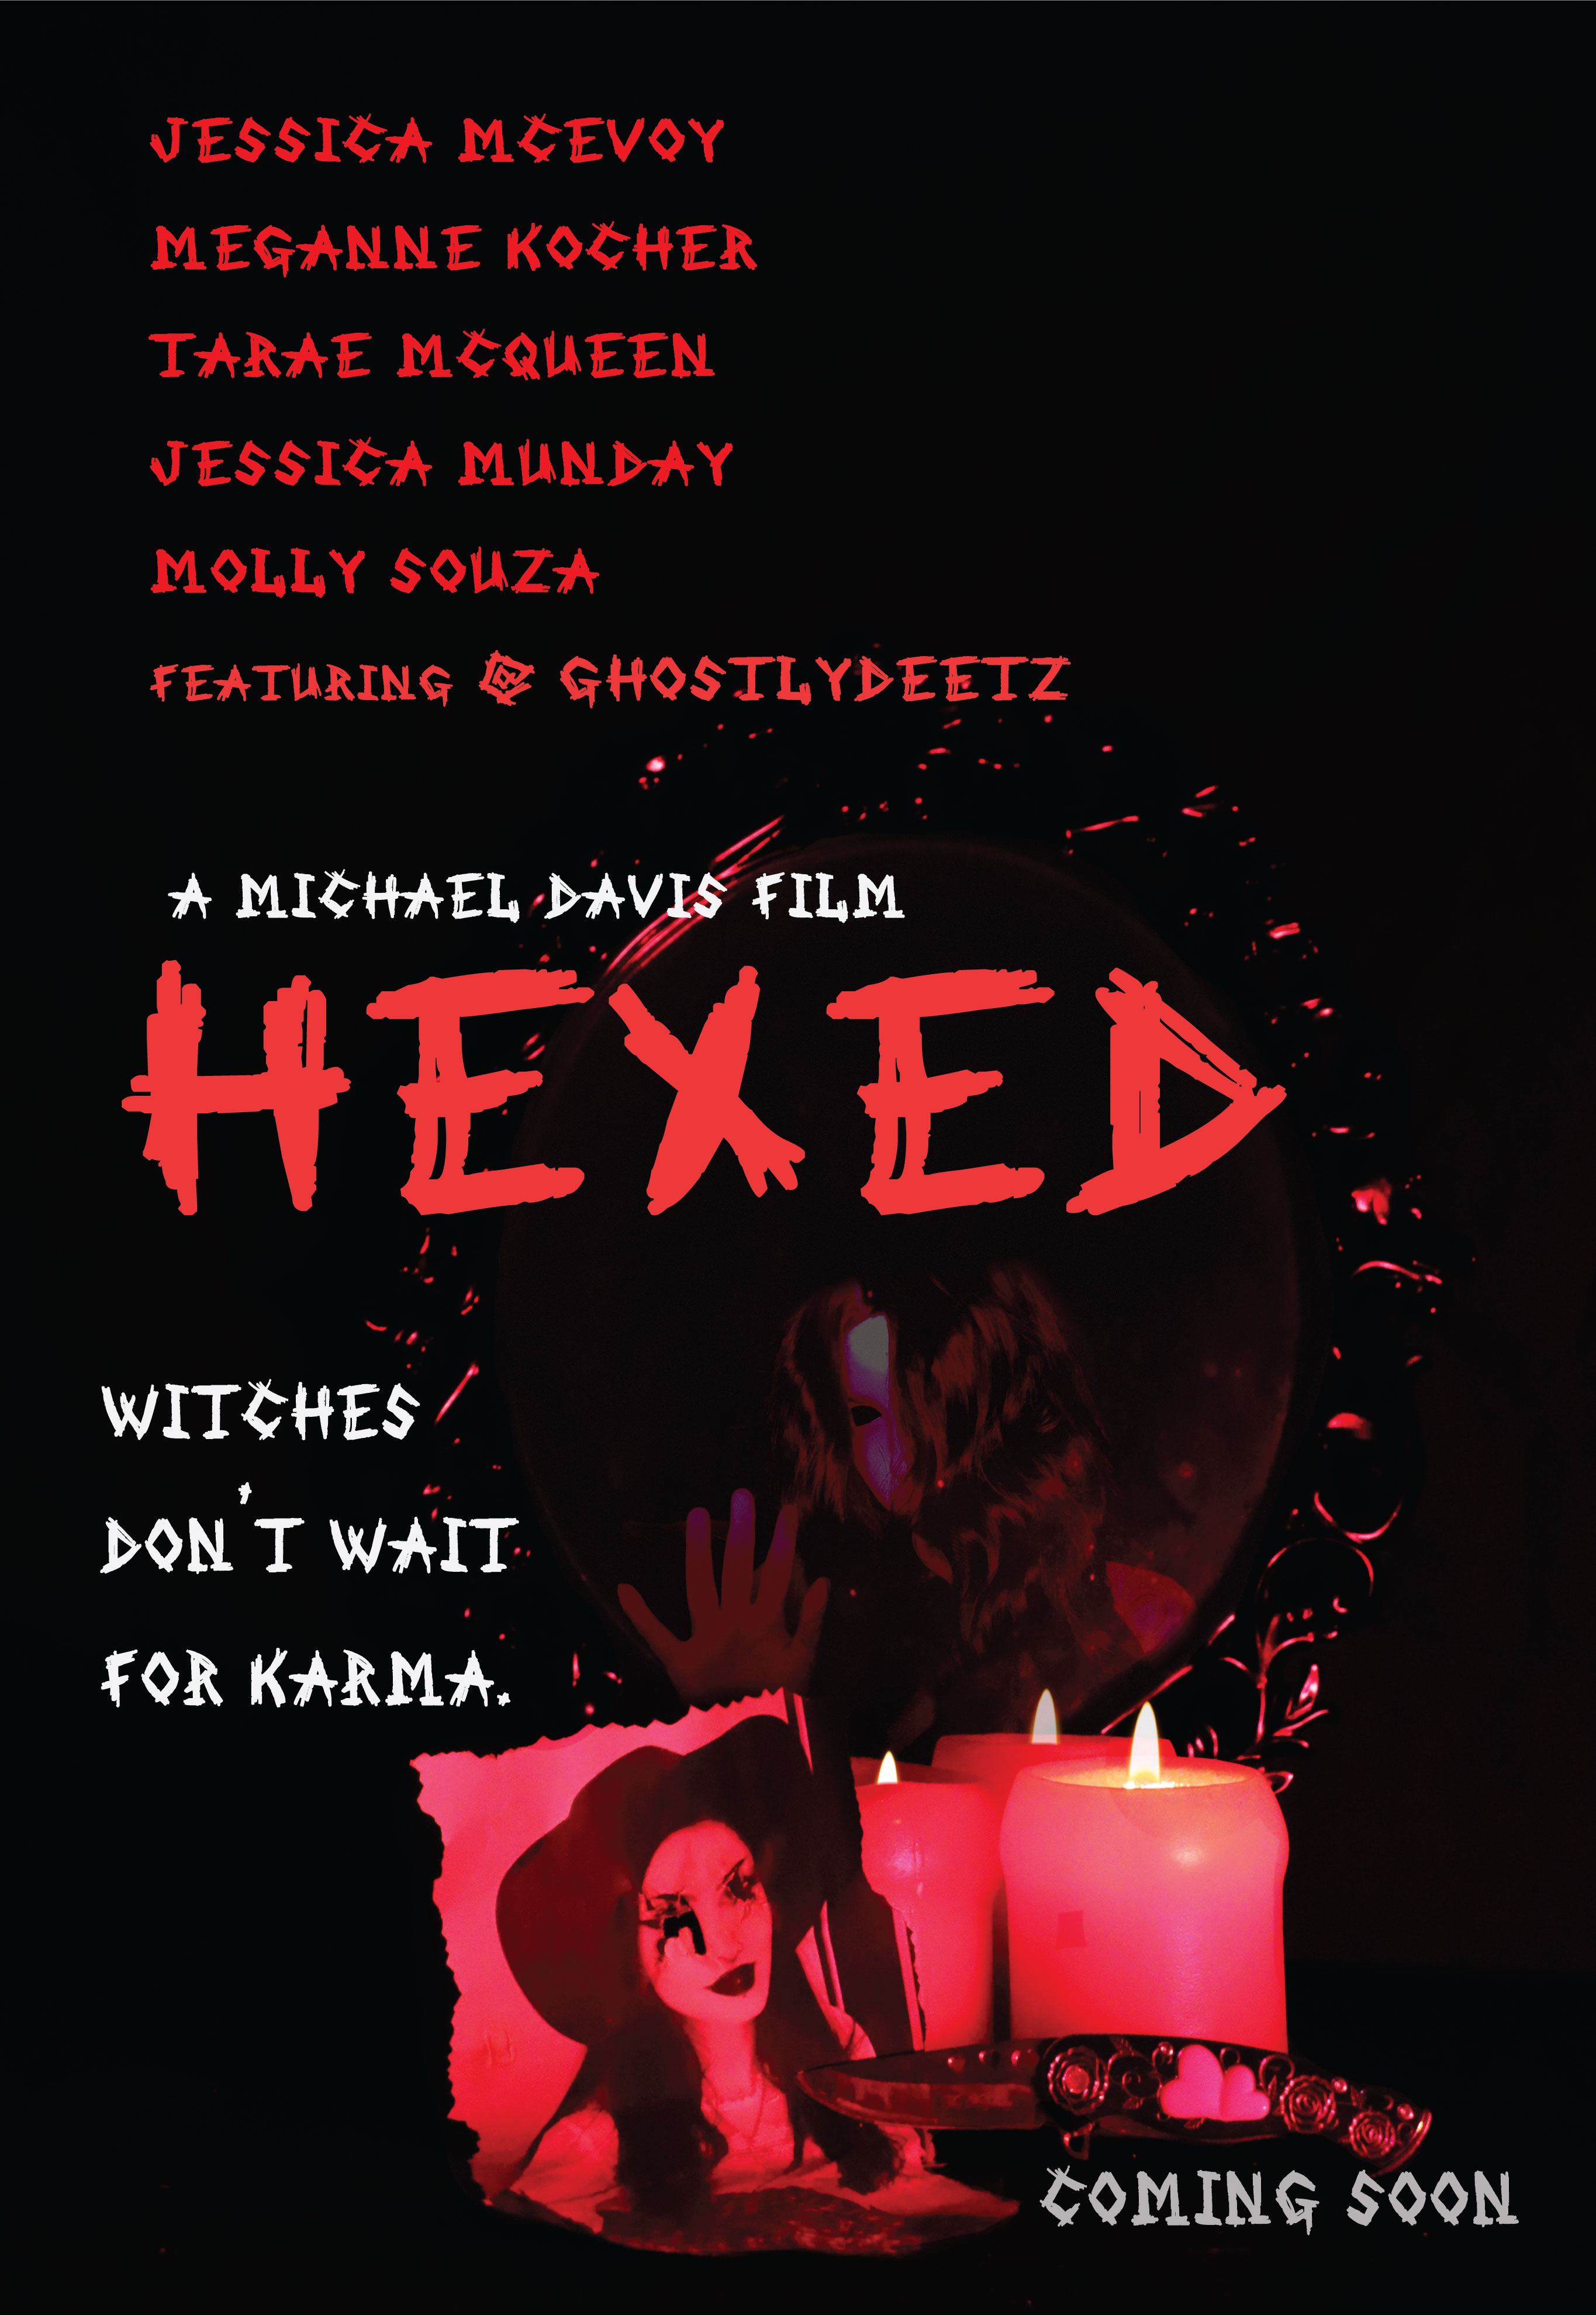 Hexed (2020)